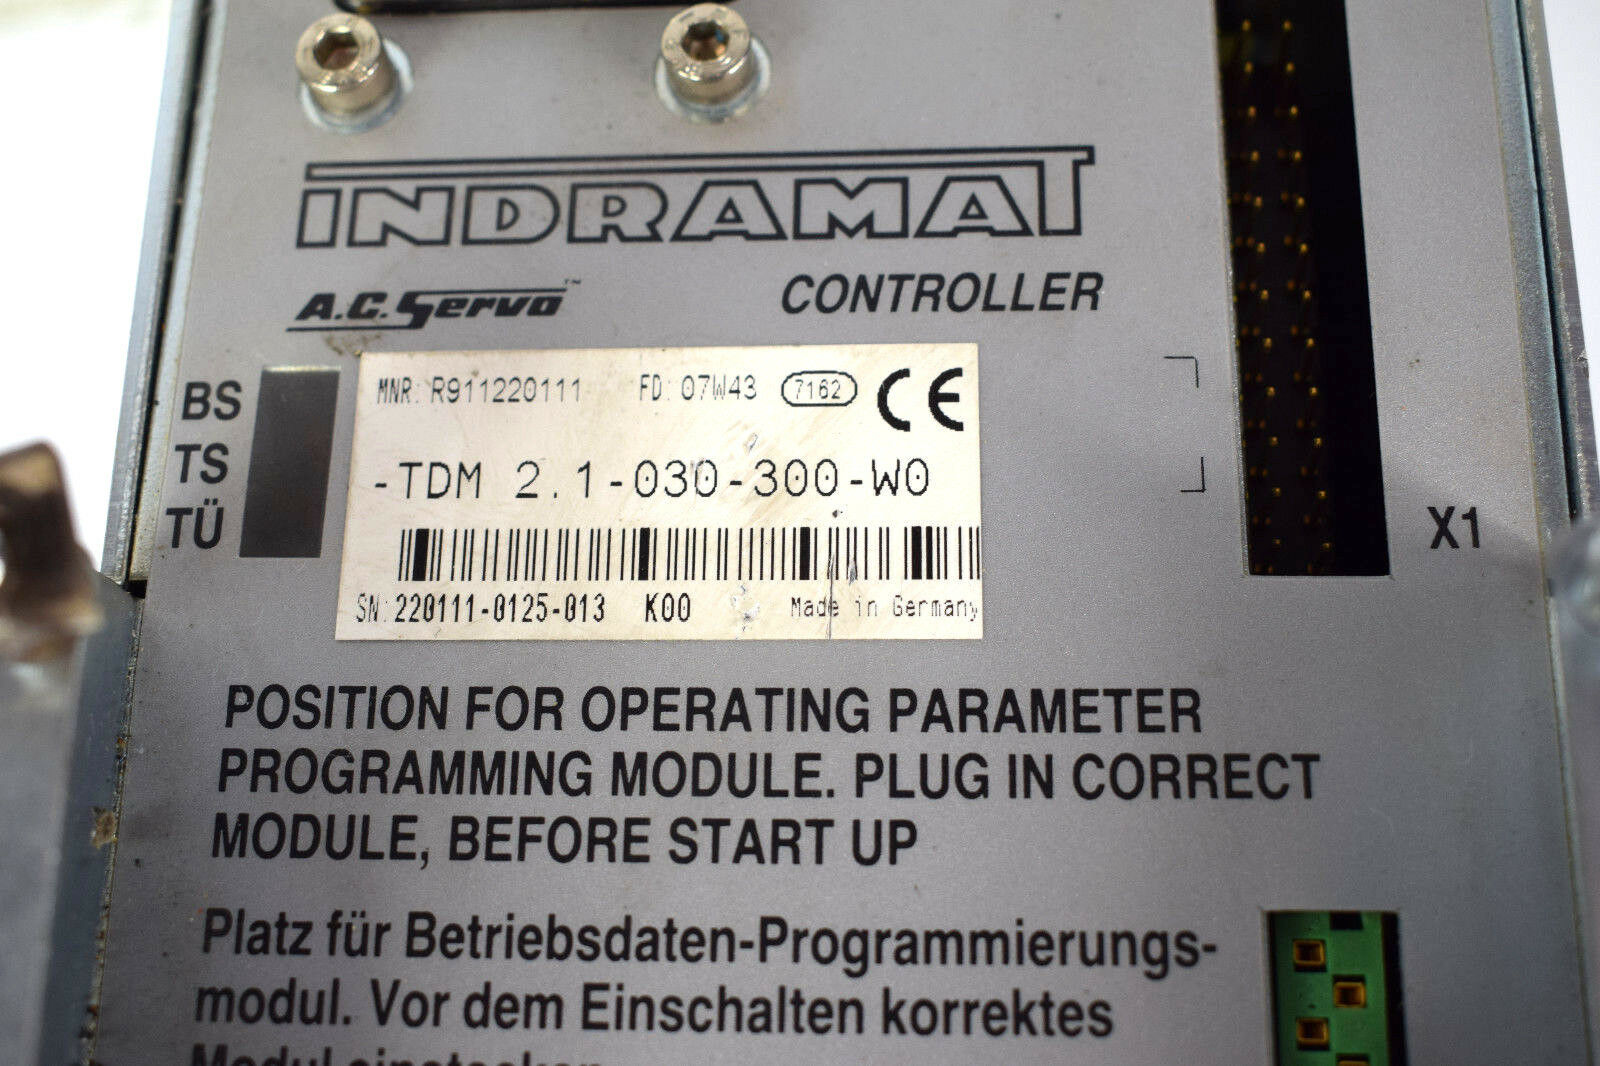 Indramat A.C. Servo Controller TDM 2.1-030-300-W0 ( R911220111 )